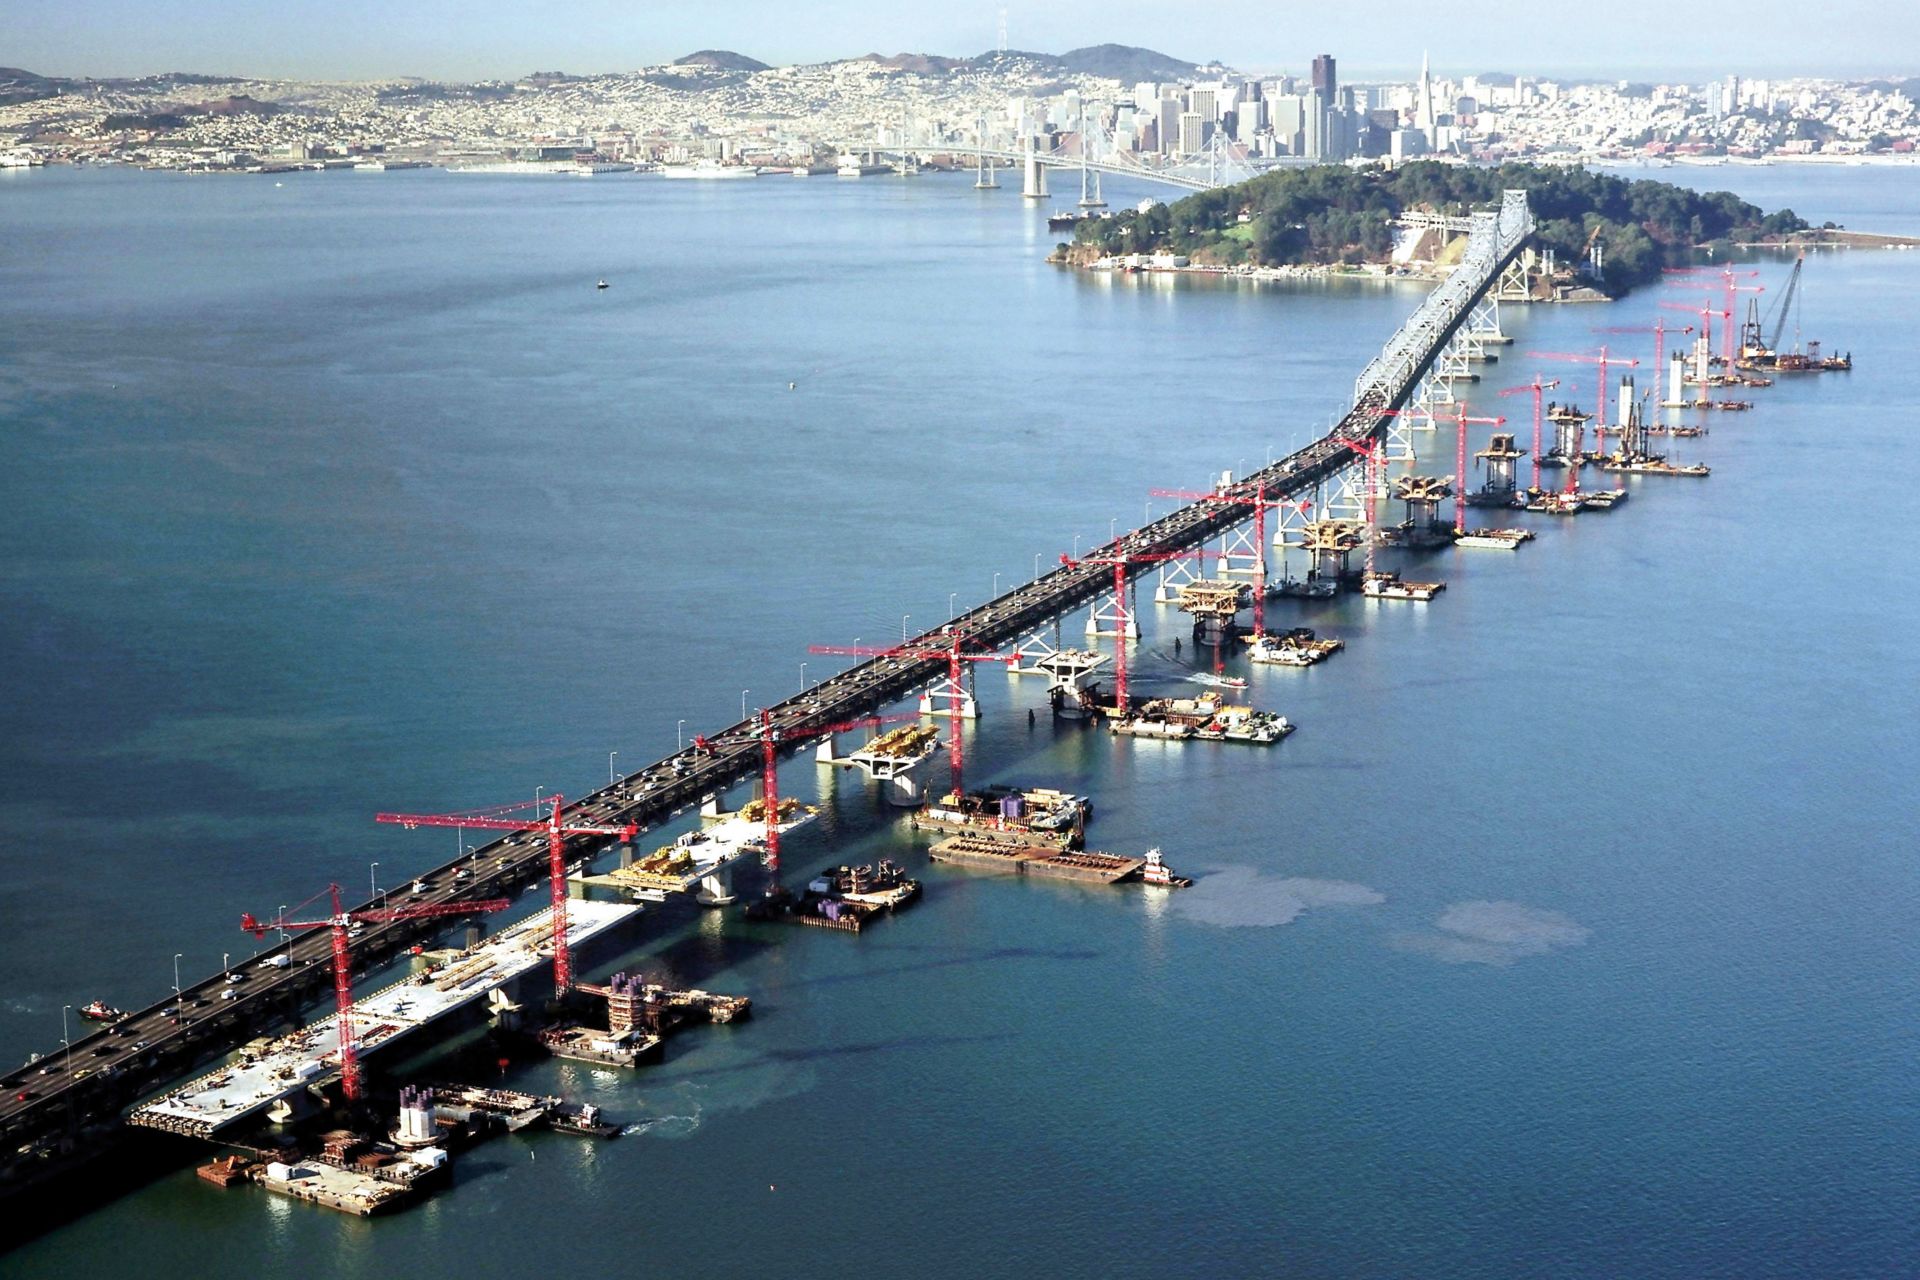 美国旧金山-奥克兰湾跨海大桥施工